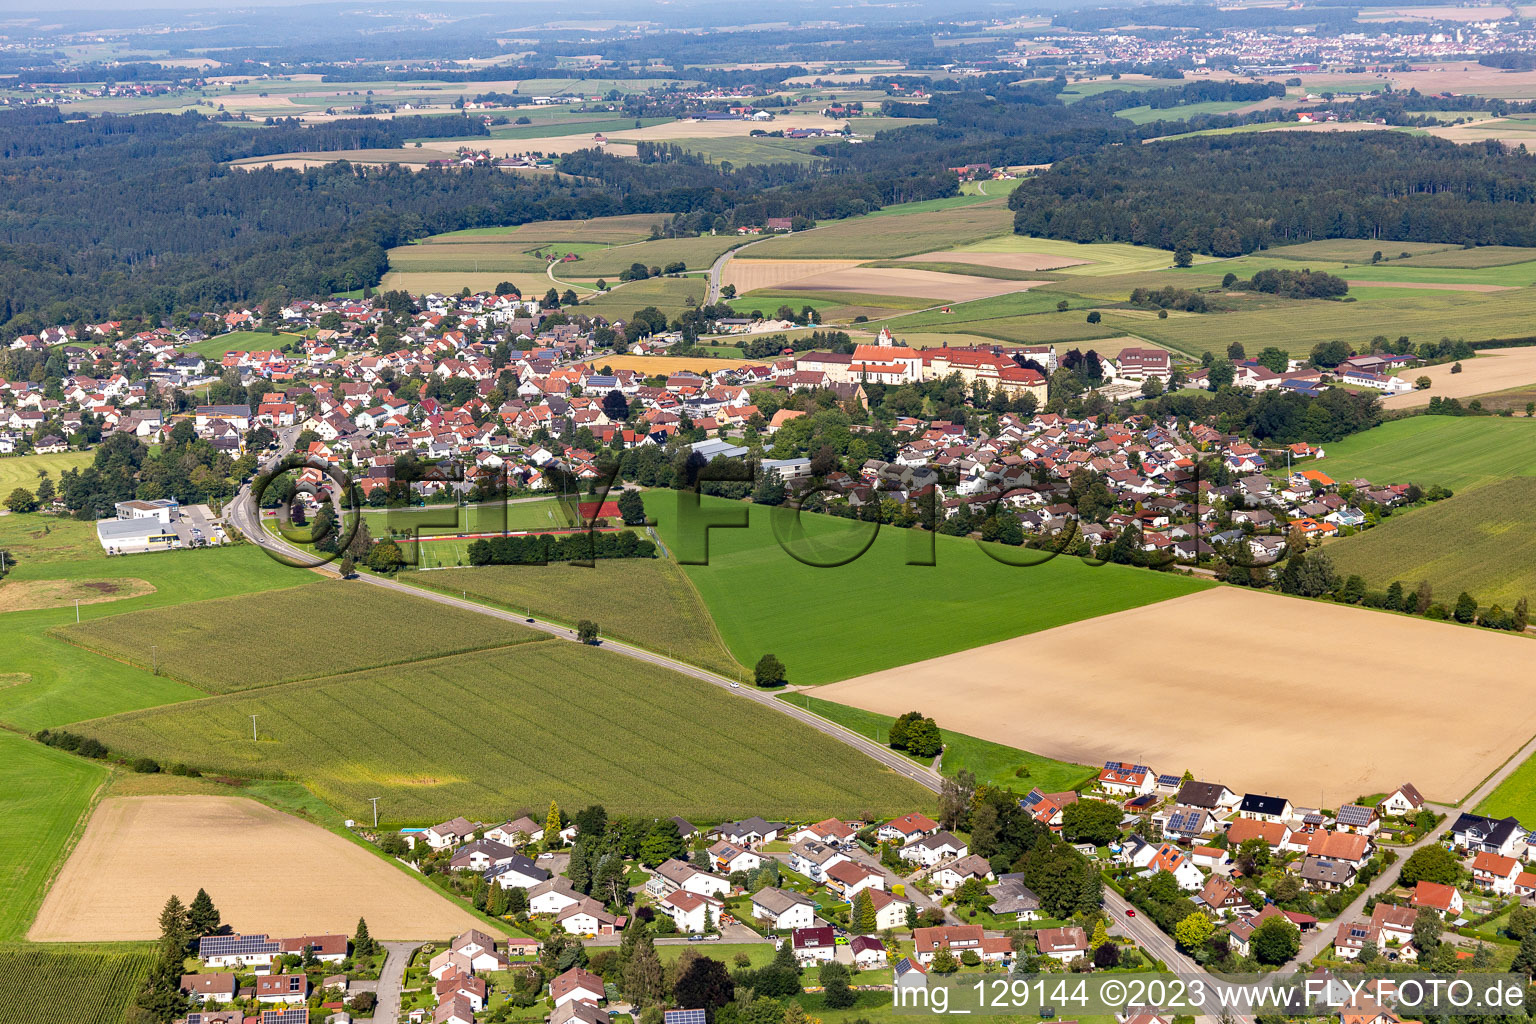 Vue aérienne de Quartier Reute in Bad Waldsee dans le département Bade-Wurtemberg, Allemagne